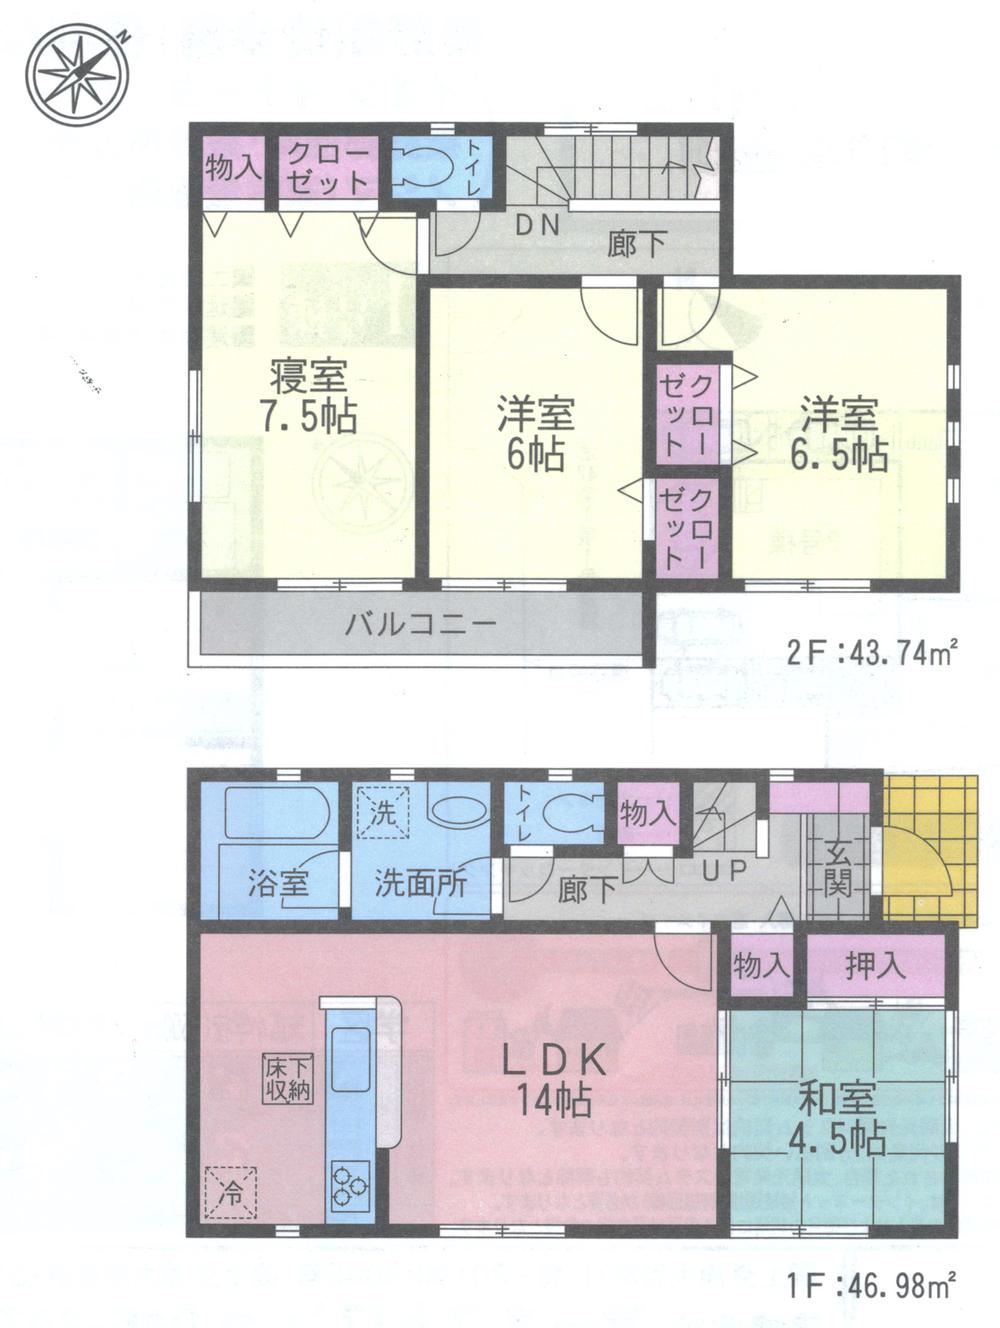 Floor plan. 17.5 million yen, 4LDK, Land area 159.99 sq m , Building area 90.72 sq m